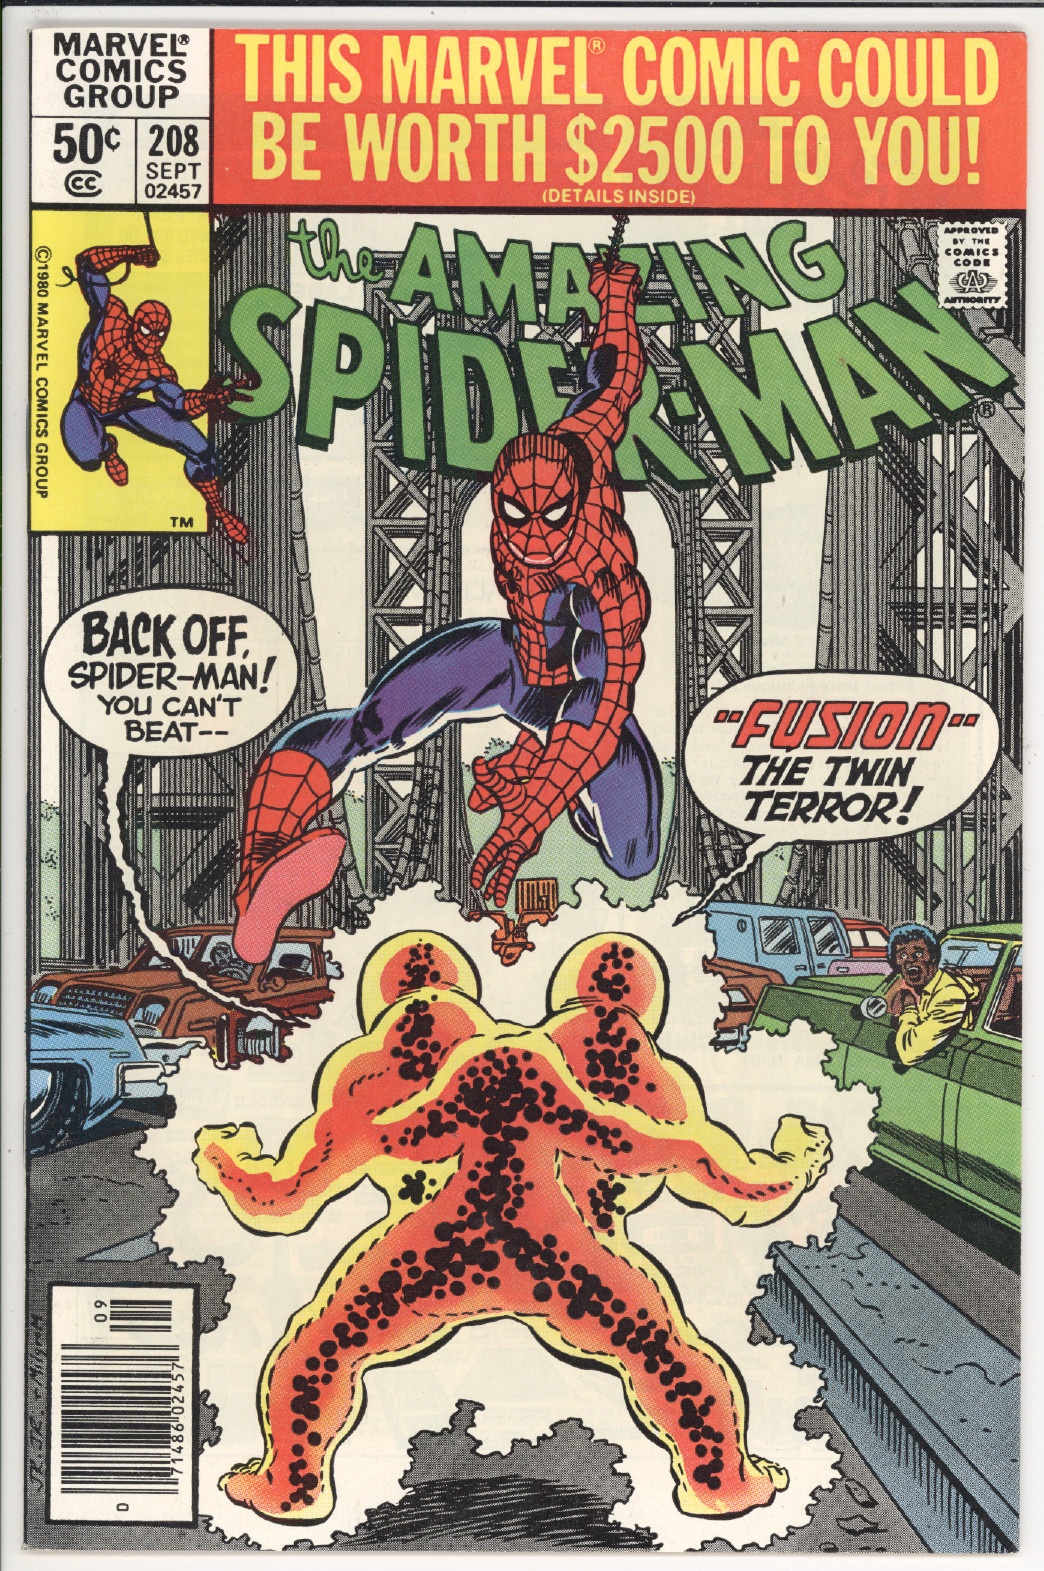 Amazing Spider-Man #208